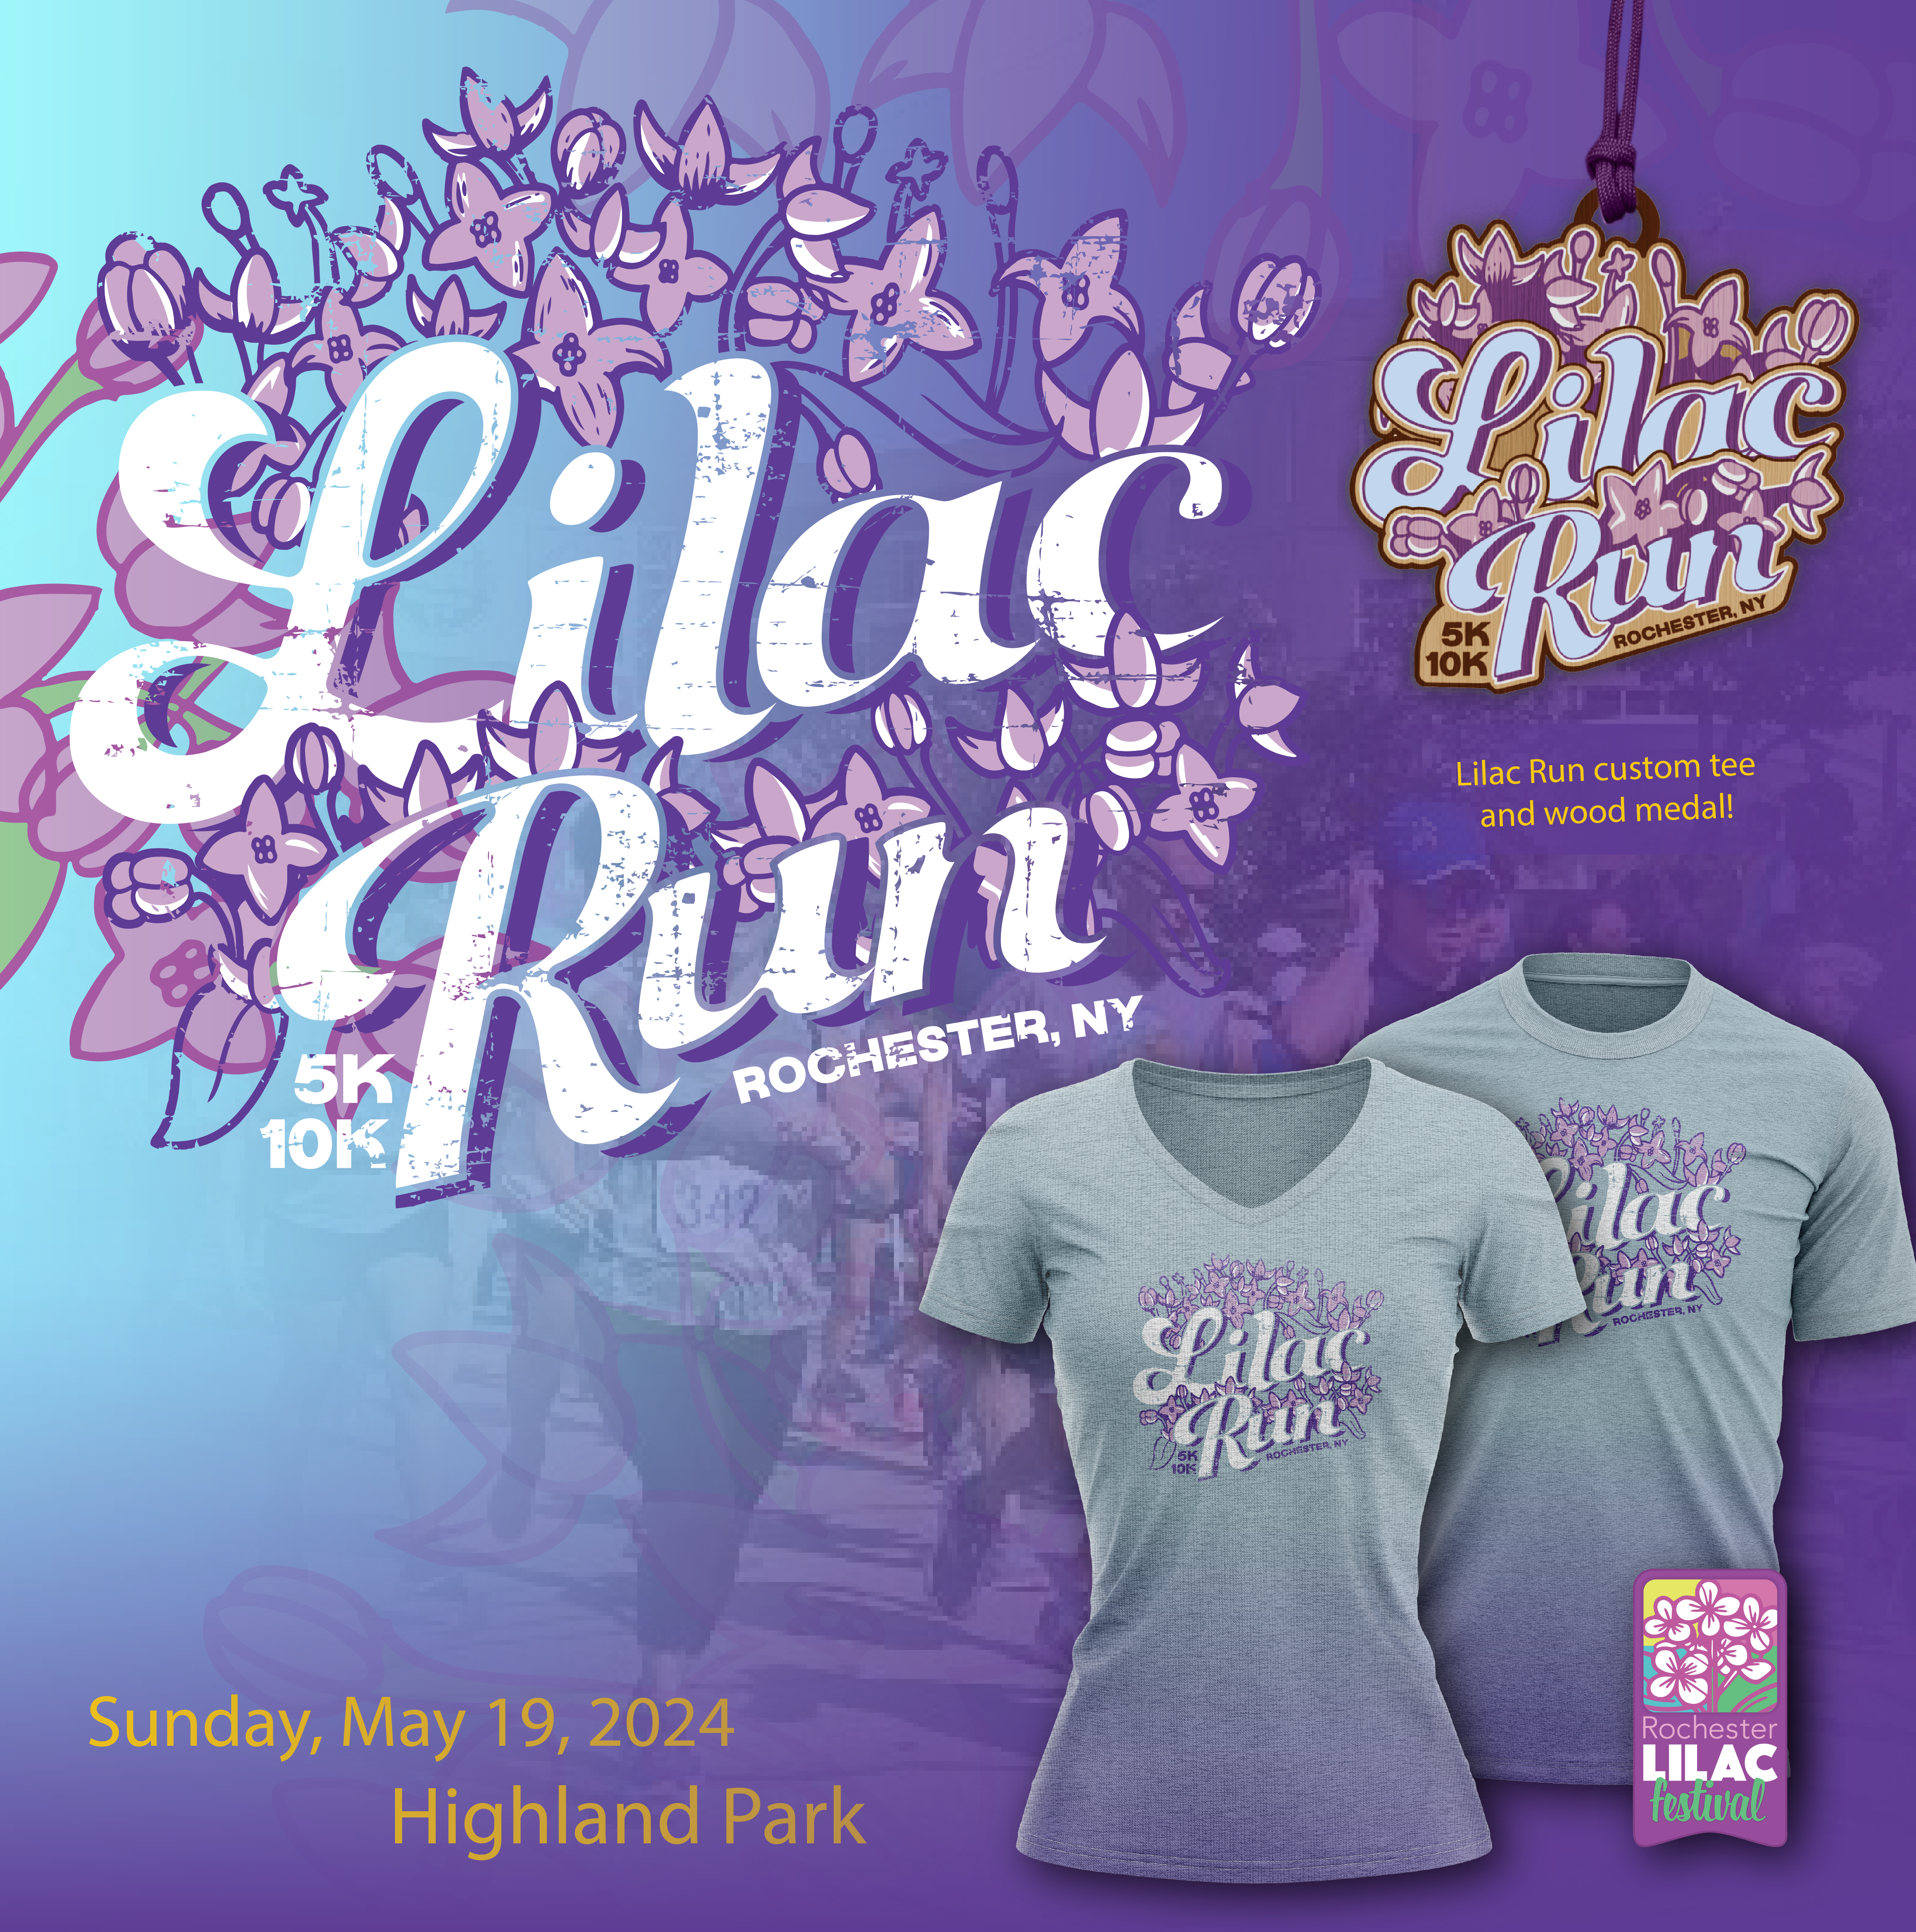 Lilac run logo and shirts